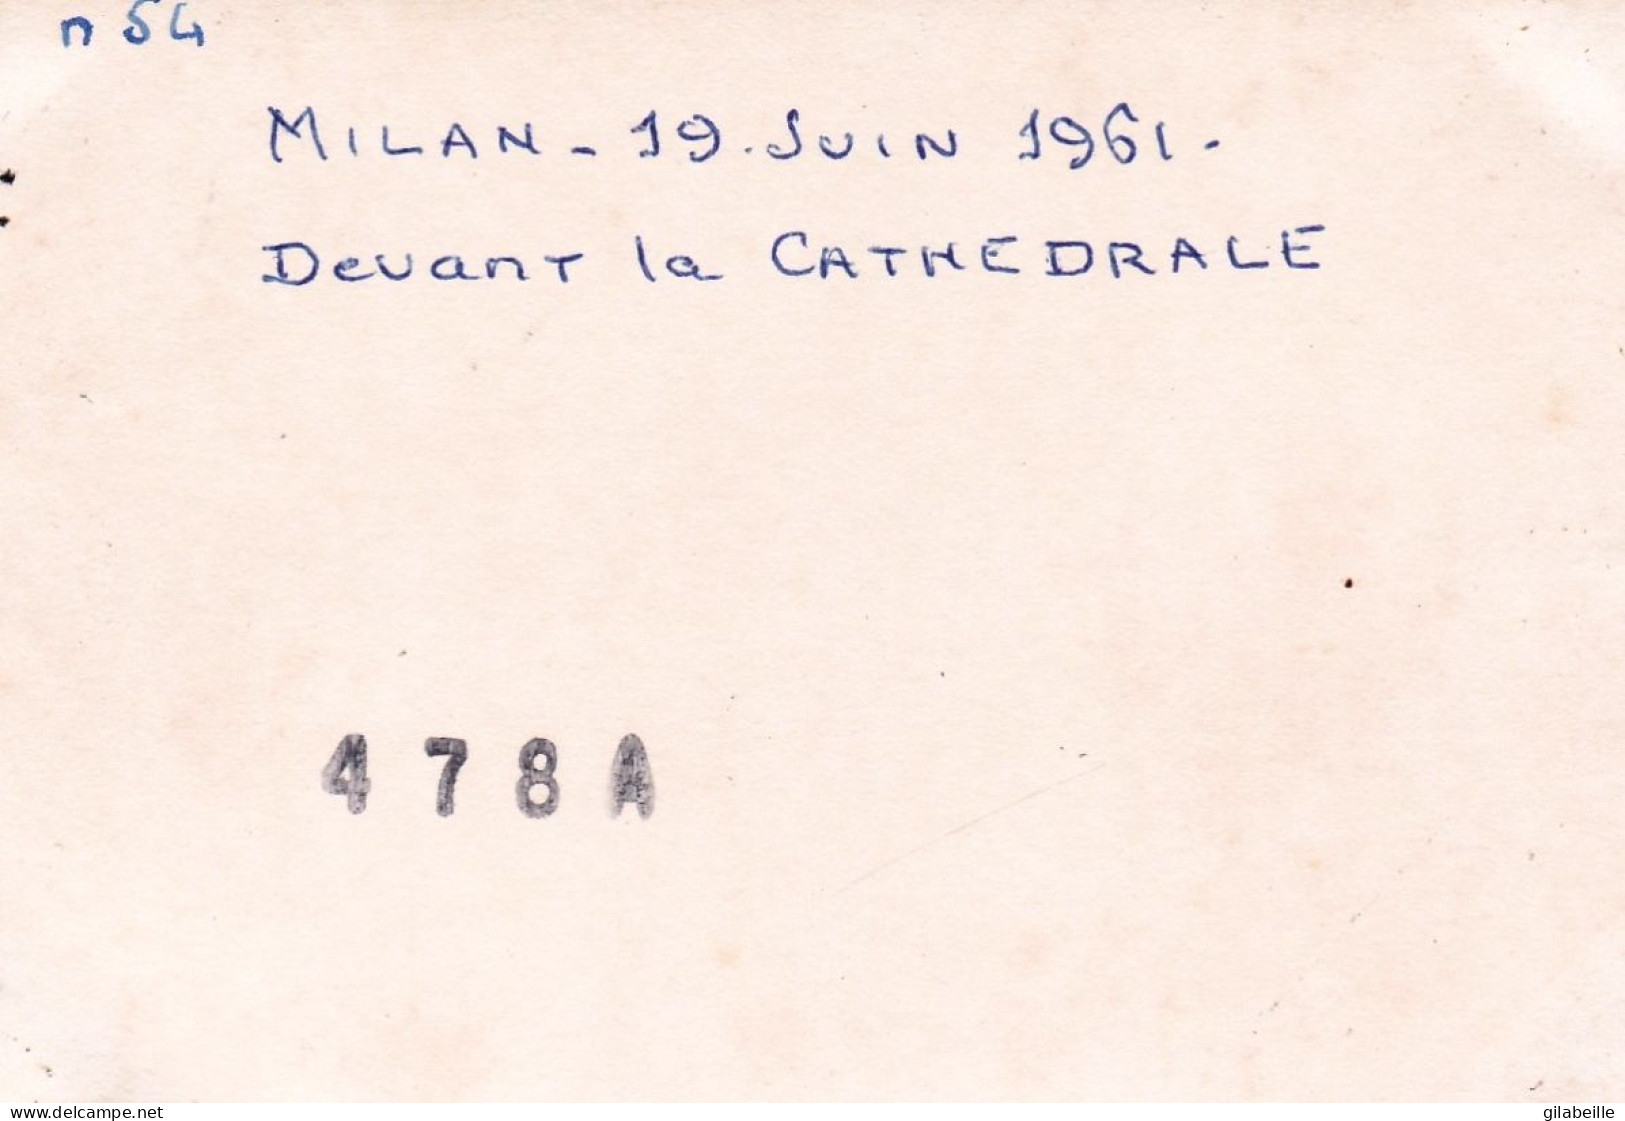 Photo 10.0 X 7.2 - MILAN  - MILANO - Devant  La Cathedrale -  Davanti Alla Cattedrale - Juin 1961 - Orte